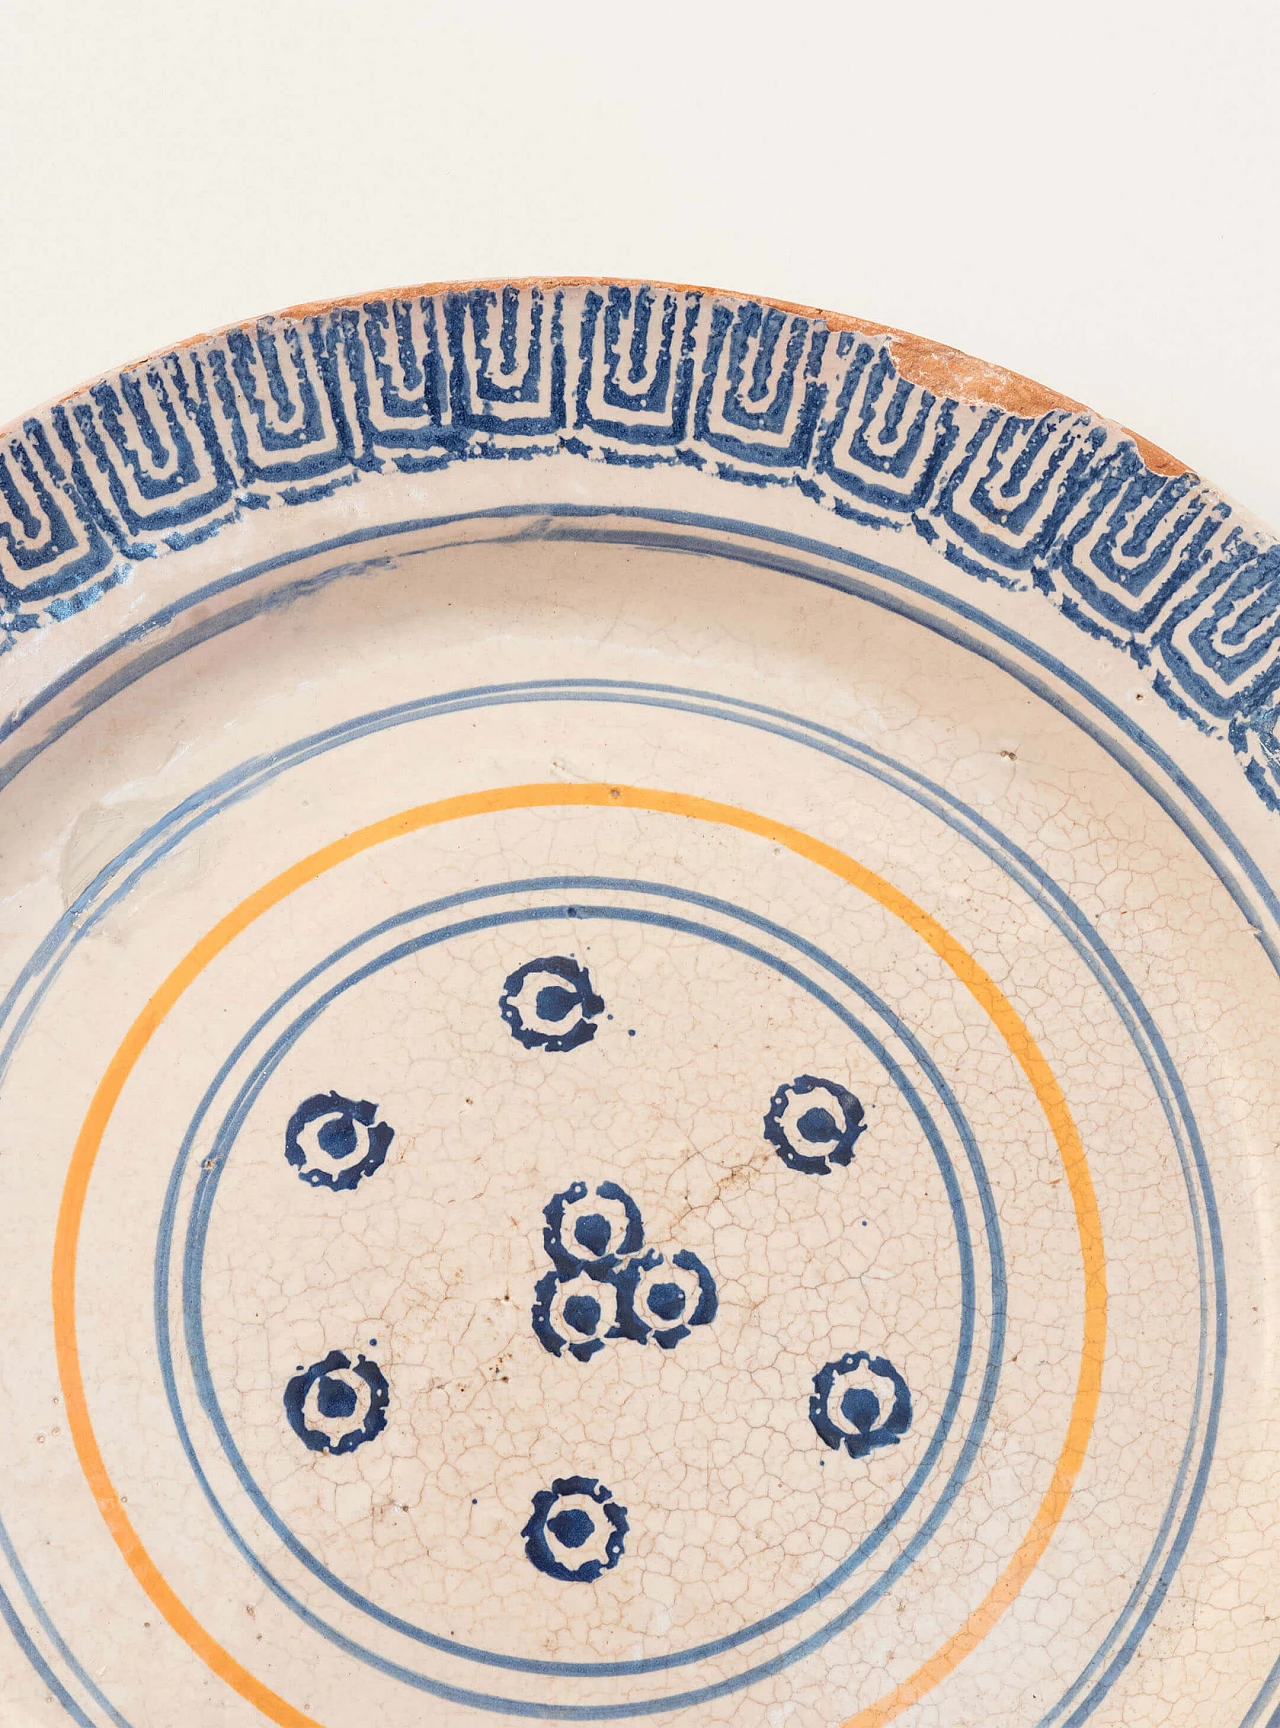 Laterza ceramic plate, Puglia region, 18th century 1084709